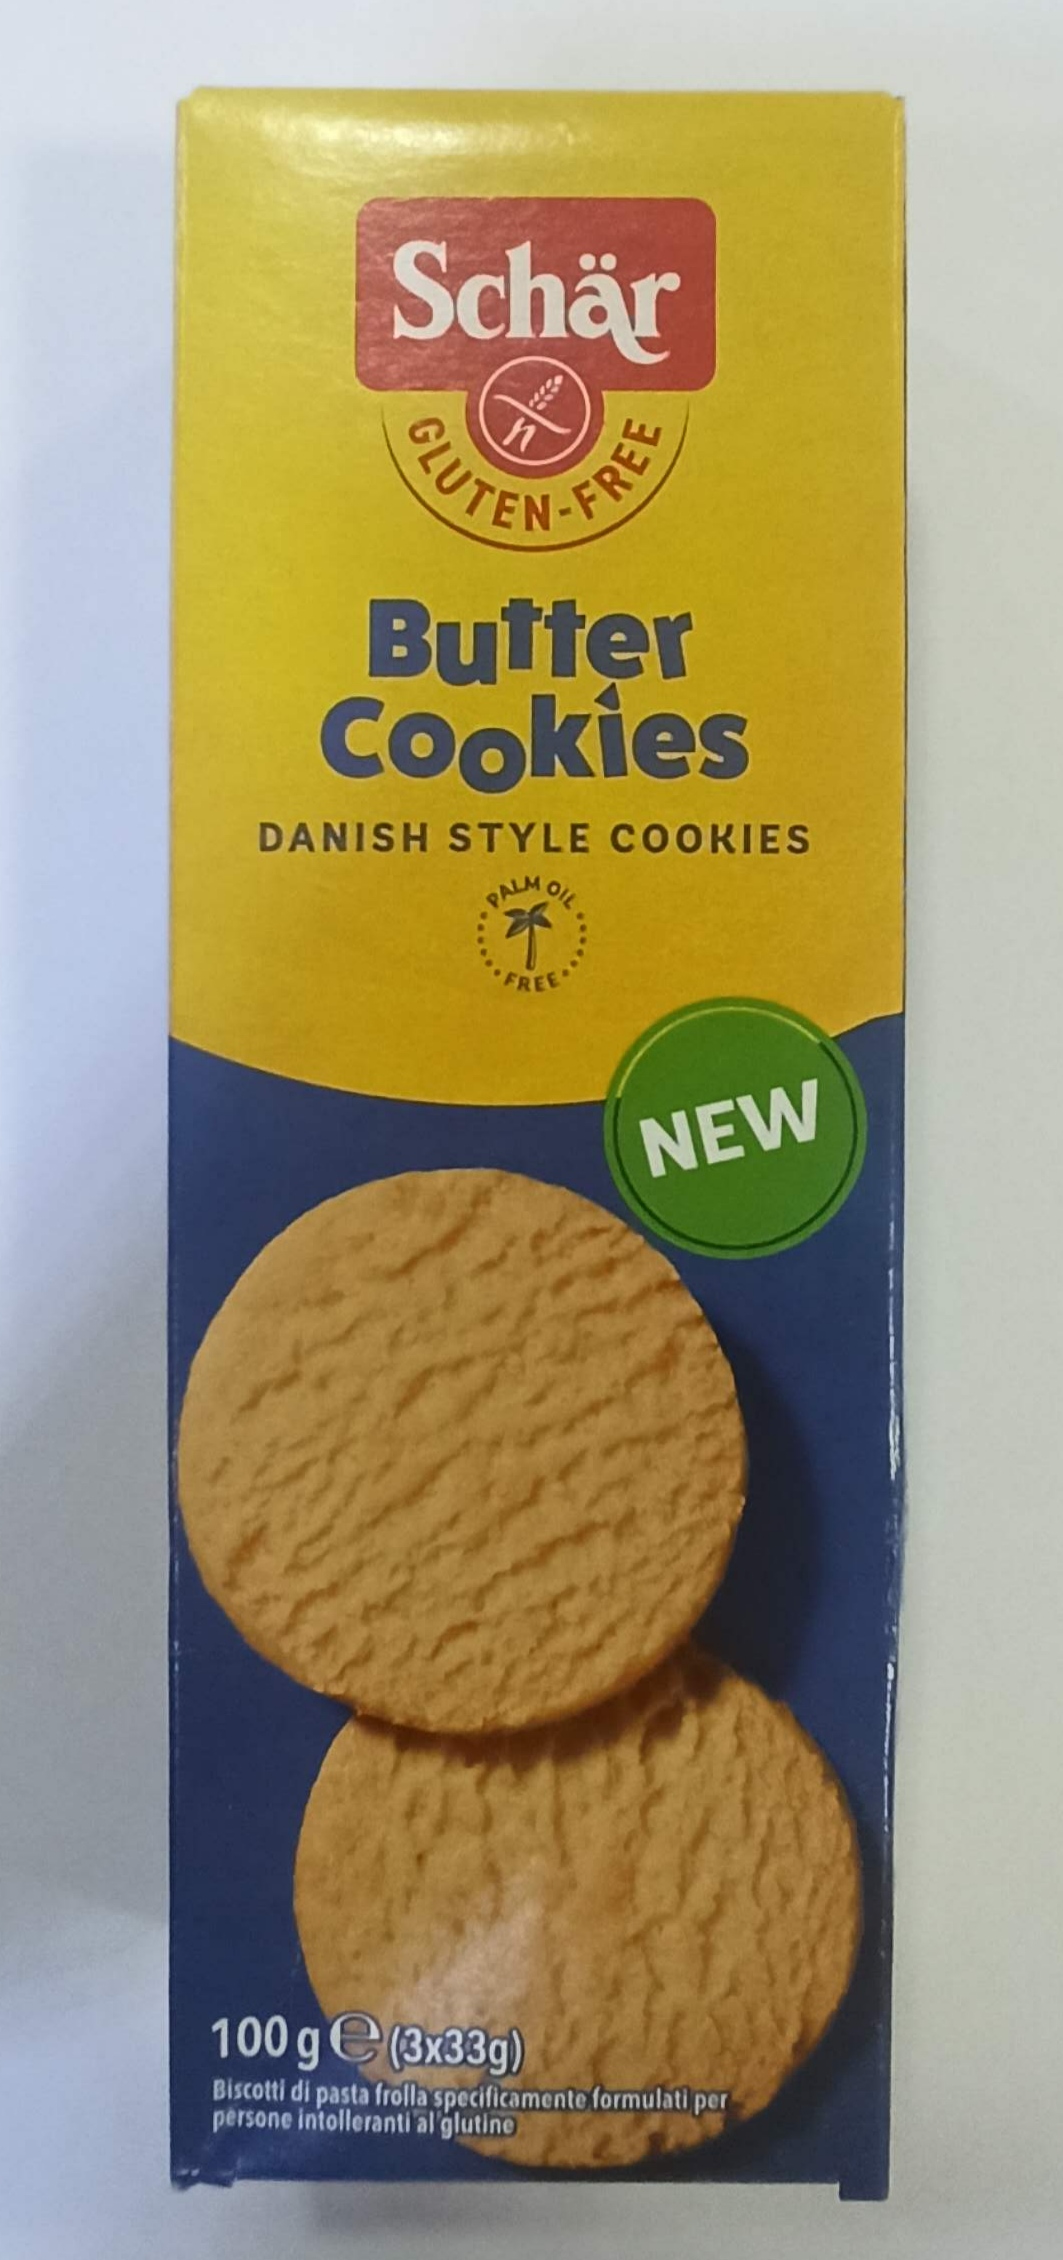 Butter Cookies Schär